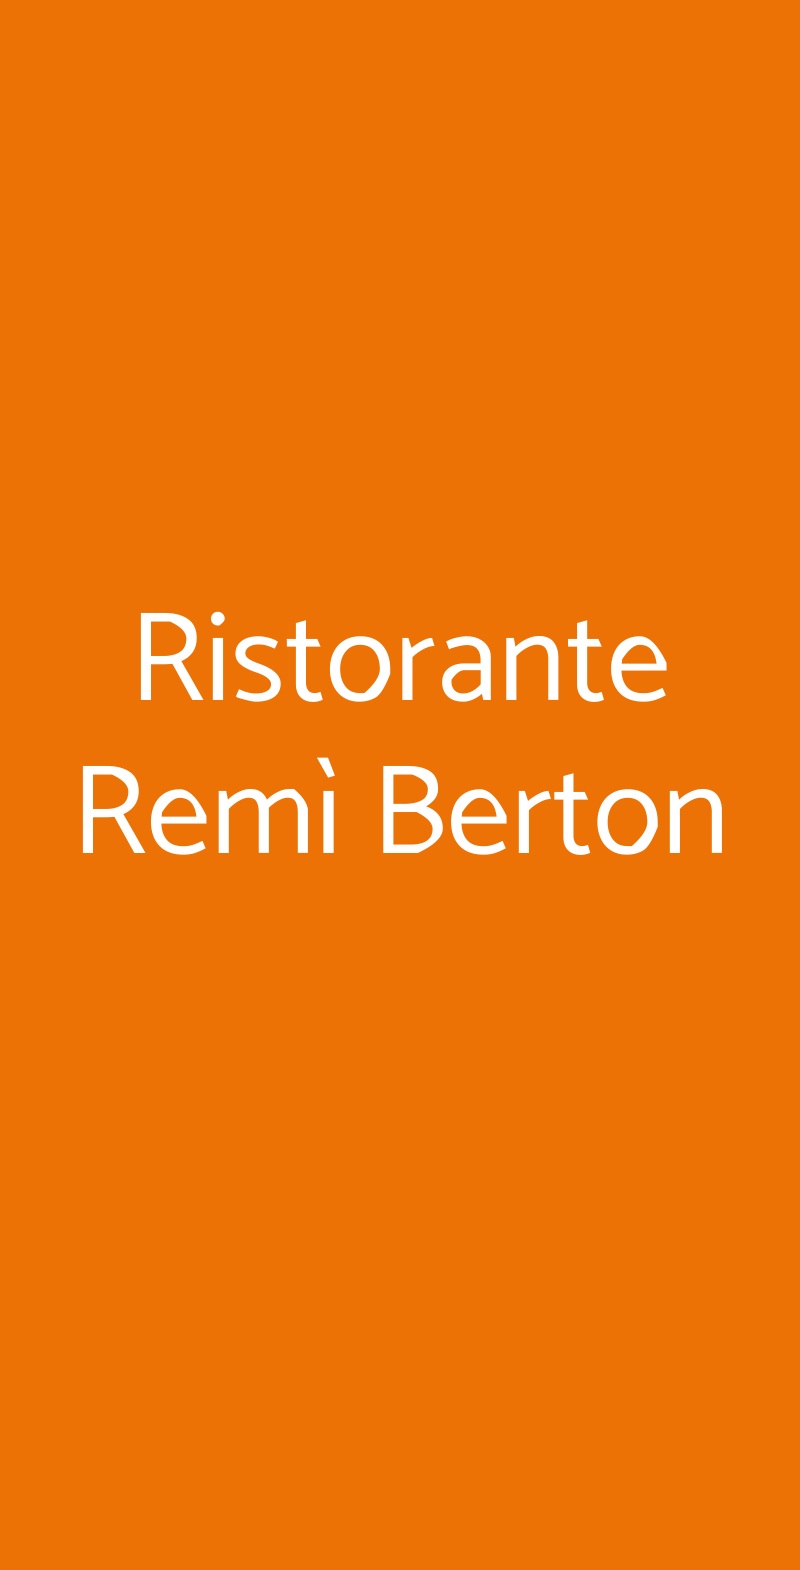 Ristorante Remì Berton Milano menù 1 pagina